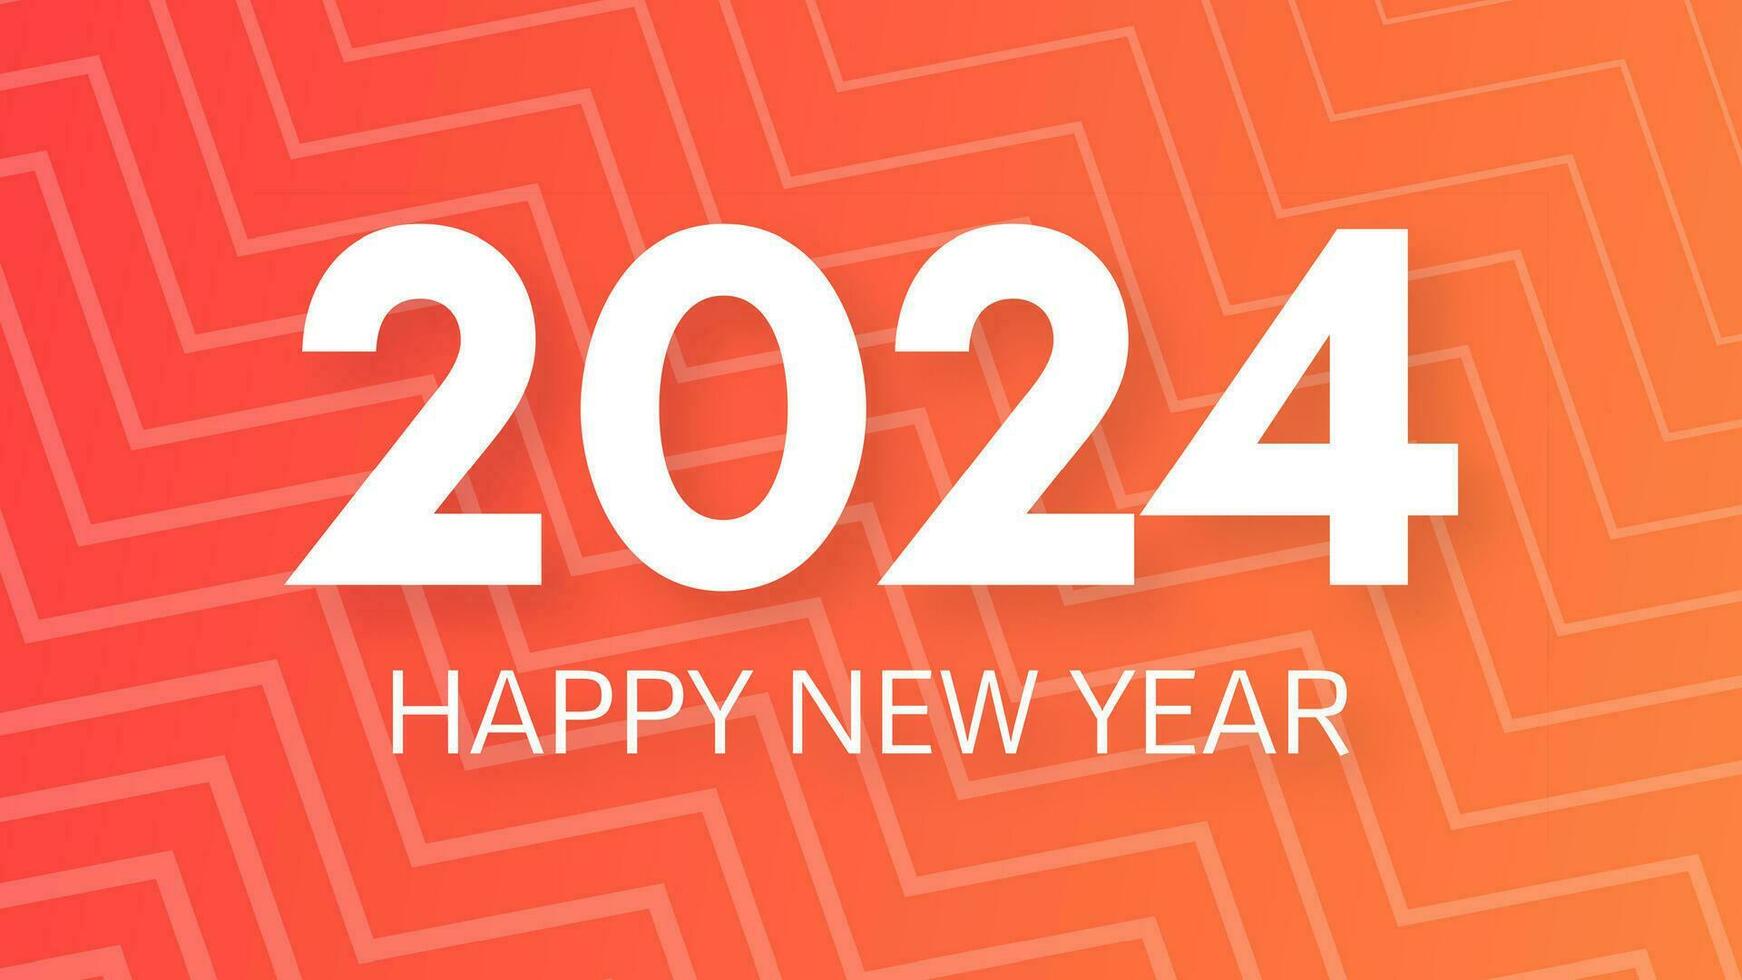 2024 feliz Novo ano fundo. moderno cumprimento bandeira modelo com branco 2024 Novo ano números em laranja abstrato fundo com linhas. vetor ilustração